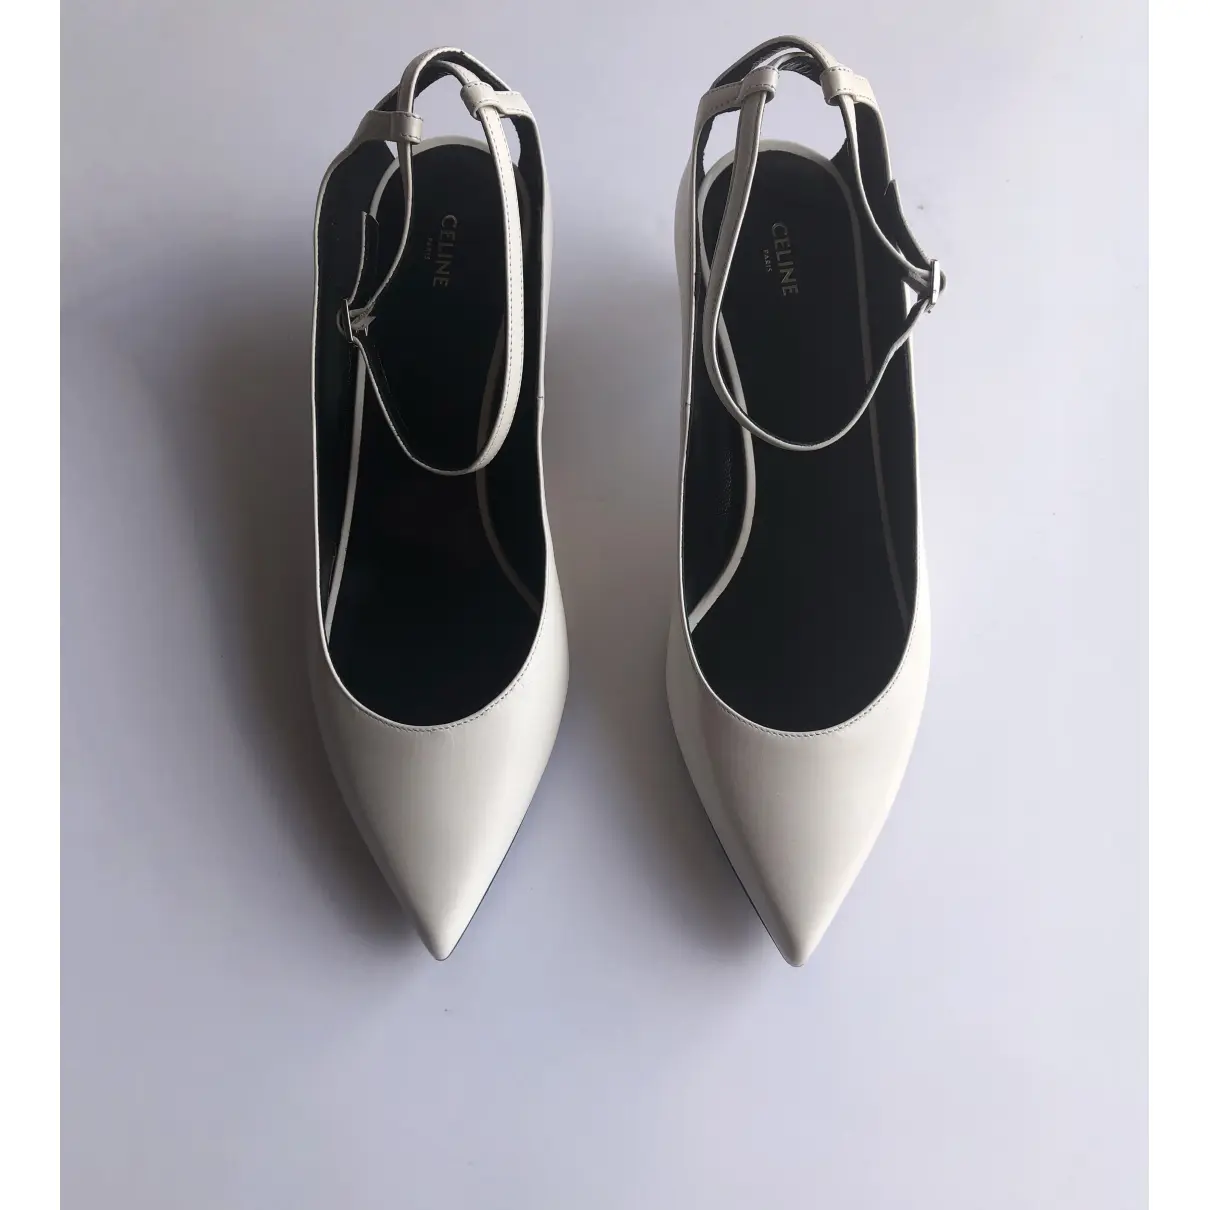 Buy Celine Sharp leather heels online